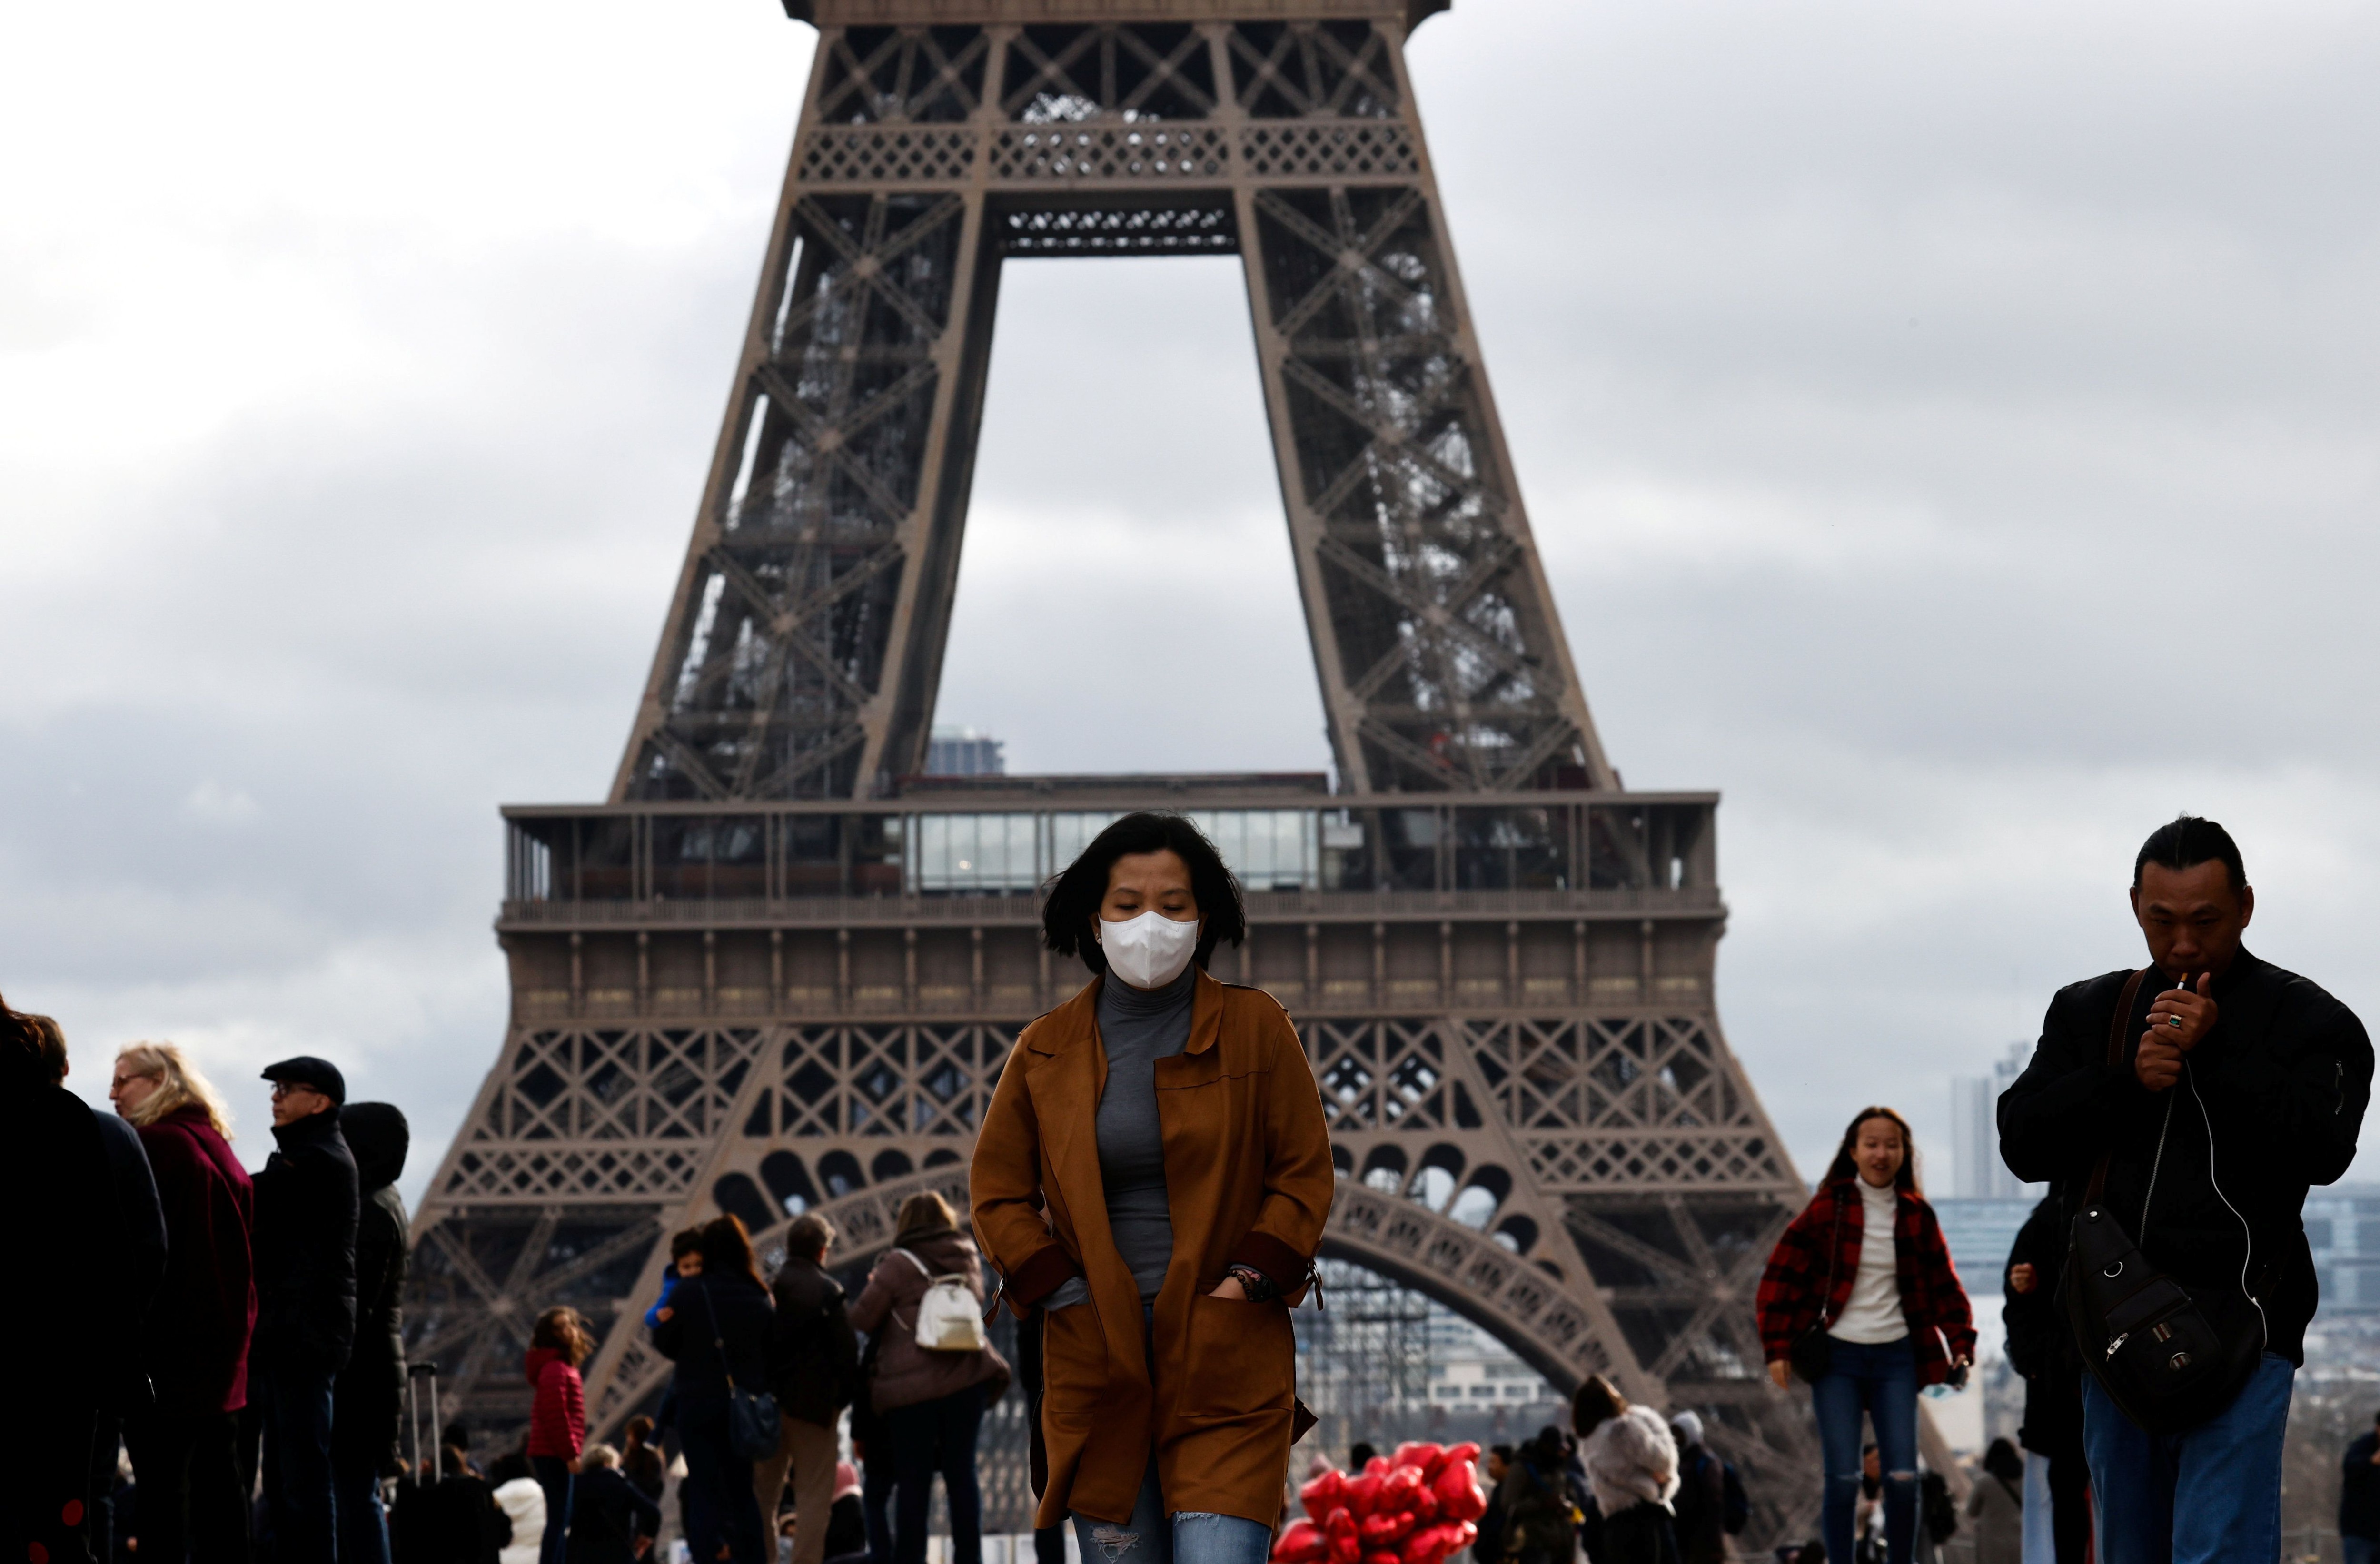 Una mujer se protege el rostro por temor a contagiarse de coronavirus frente a la Torre Eiffel de París el 1 de febrero de 2020 (REUTERS/Gonzalo Fuentes)